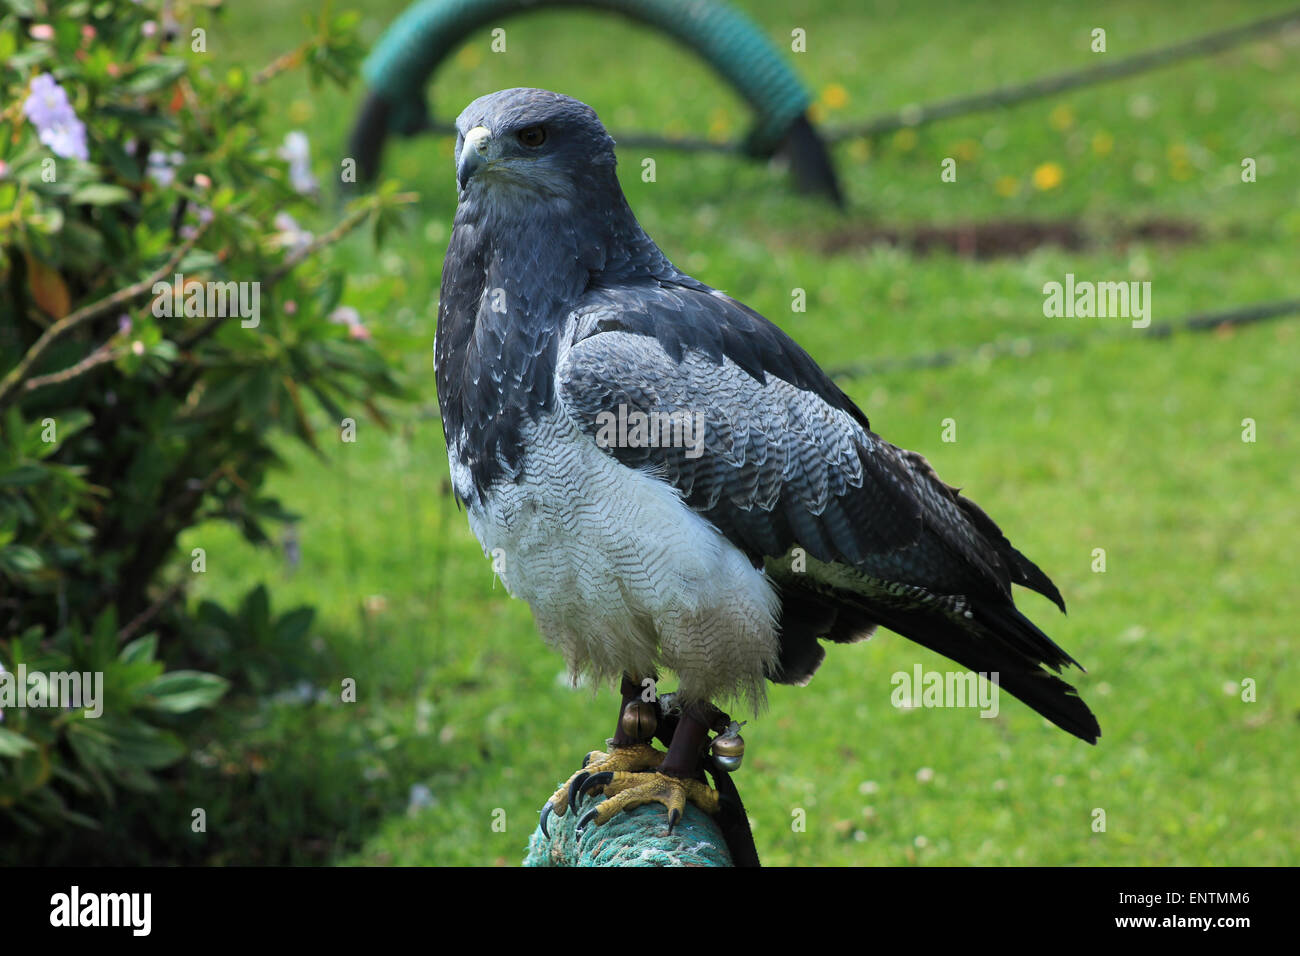 A Black Chested Buzzard Eagle on a perch at an outdoor bird sanctuary near Otavalo, Ecuador Stock Photo